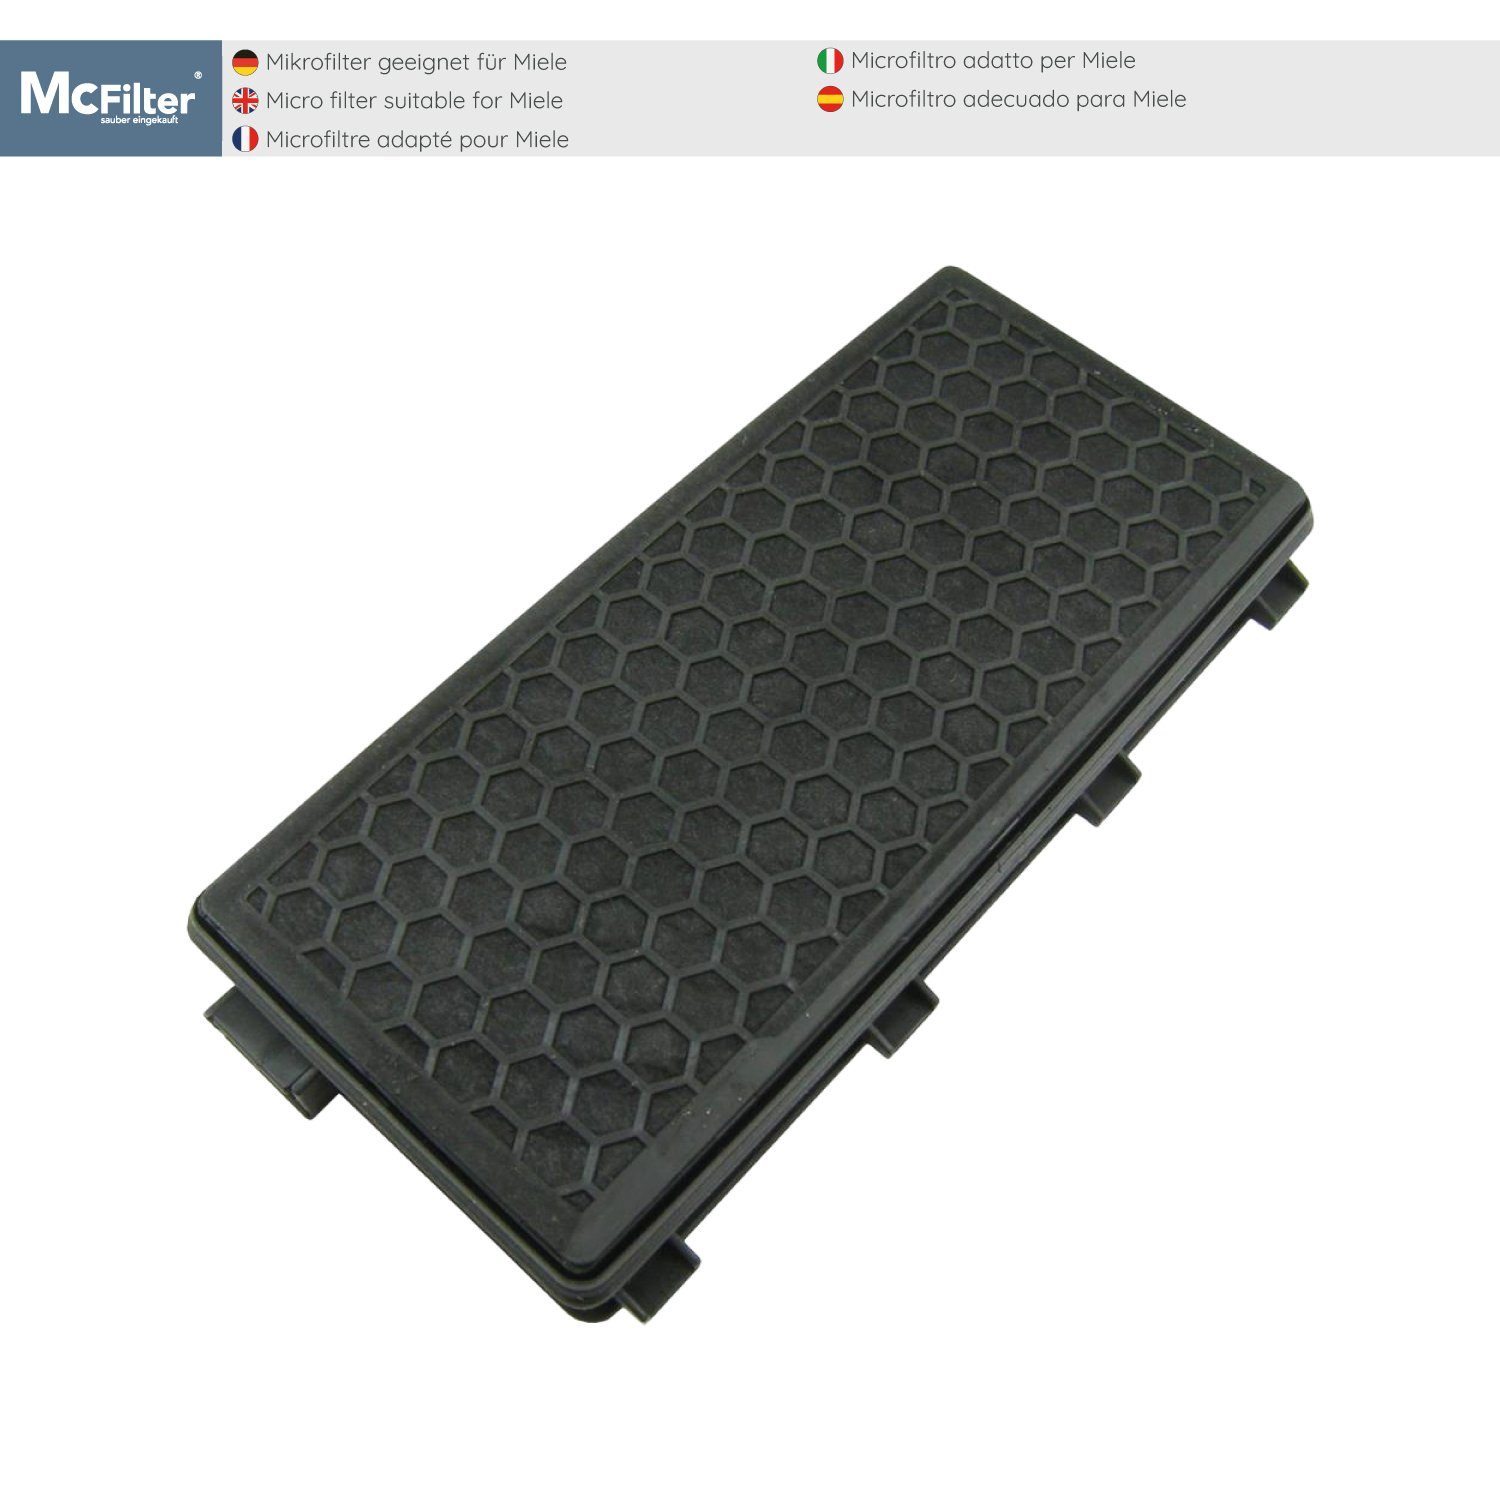 McFilter HEPA-Filter zu für geeignet PowerLine Filter 50 passgenau, S8360, S8, Miele S8340 schwarz, SF-AH Alternative EcoLine